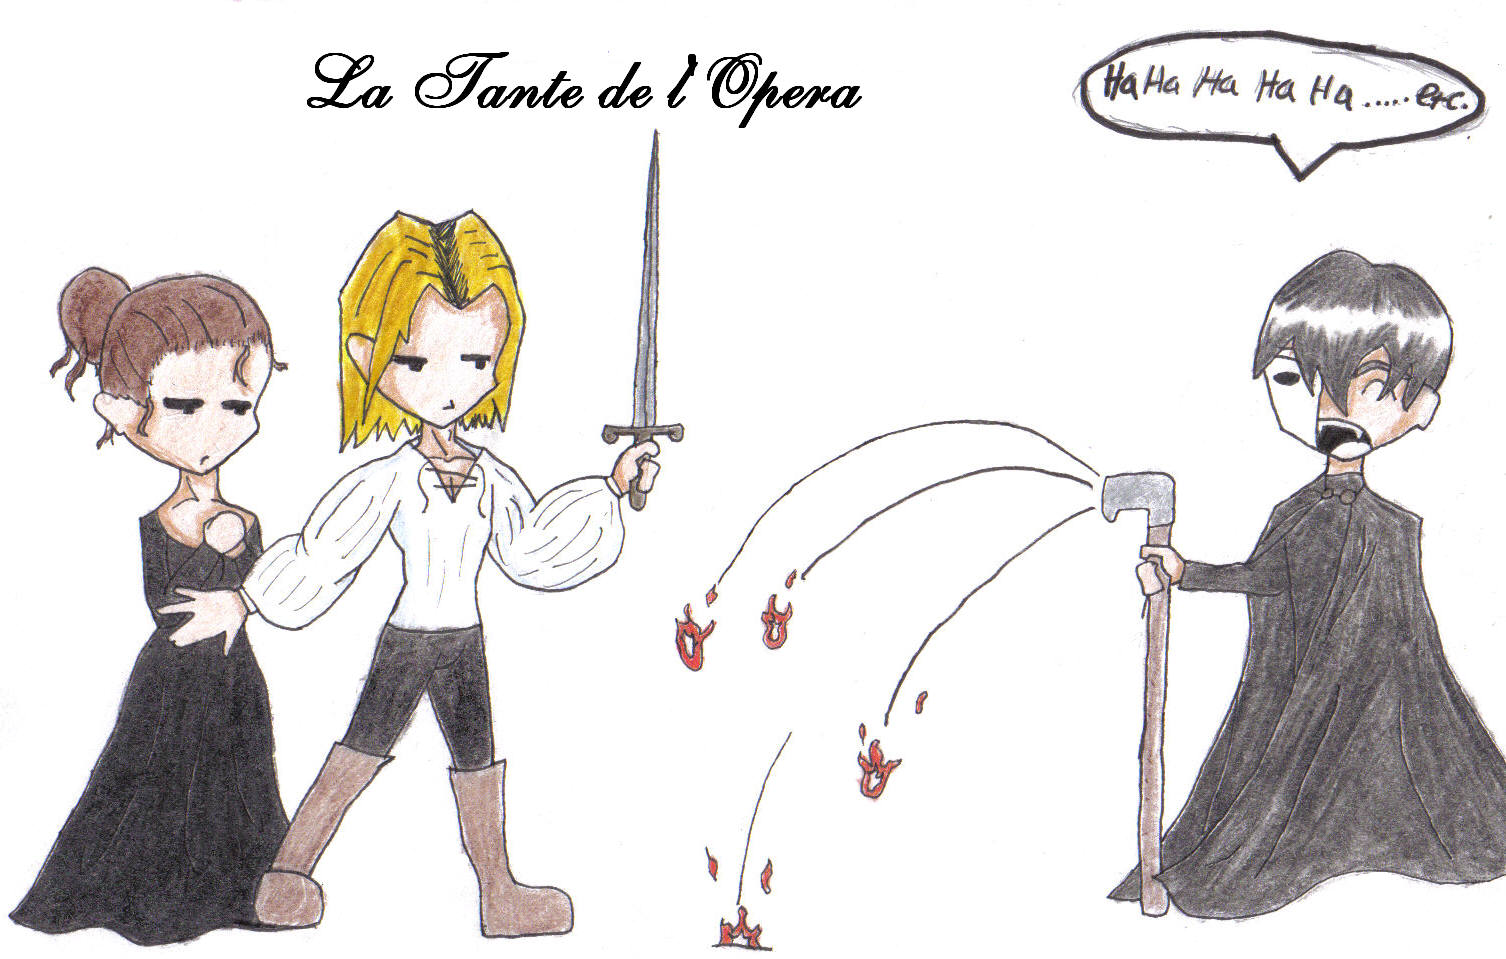 La Tante de l'Opera by Penguins_luv_LSD